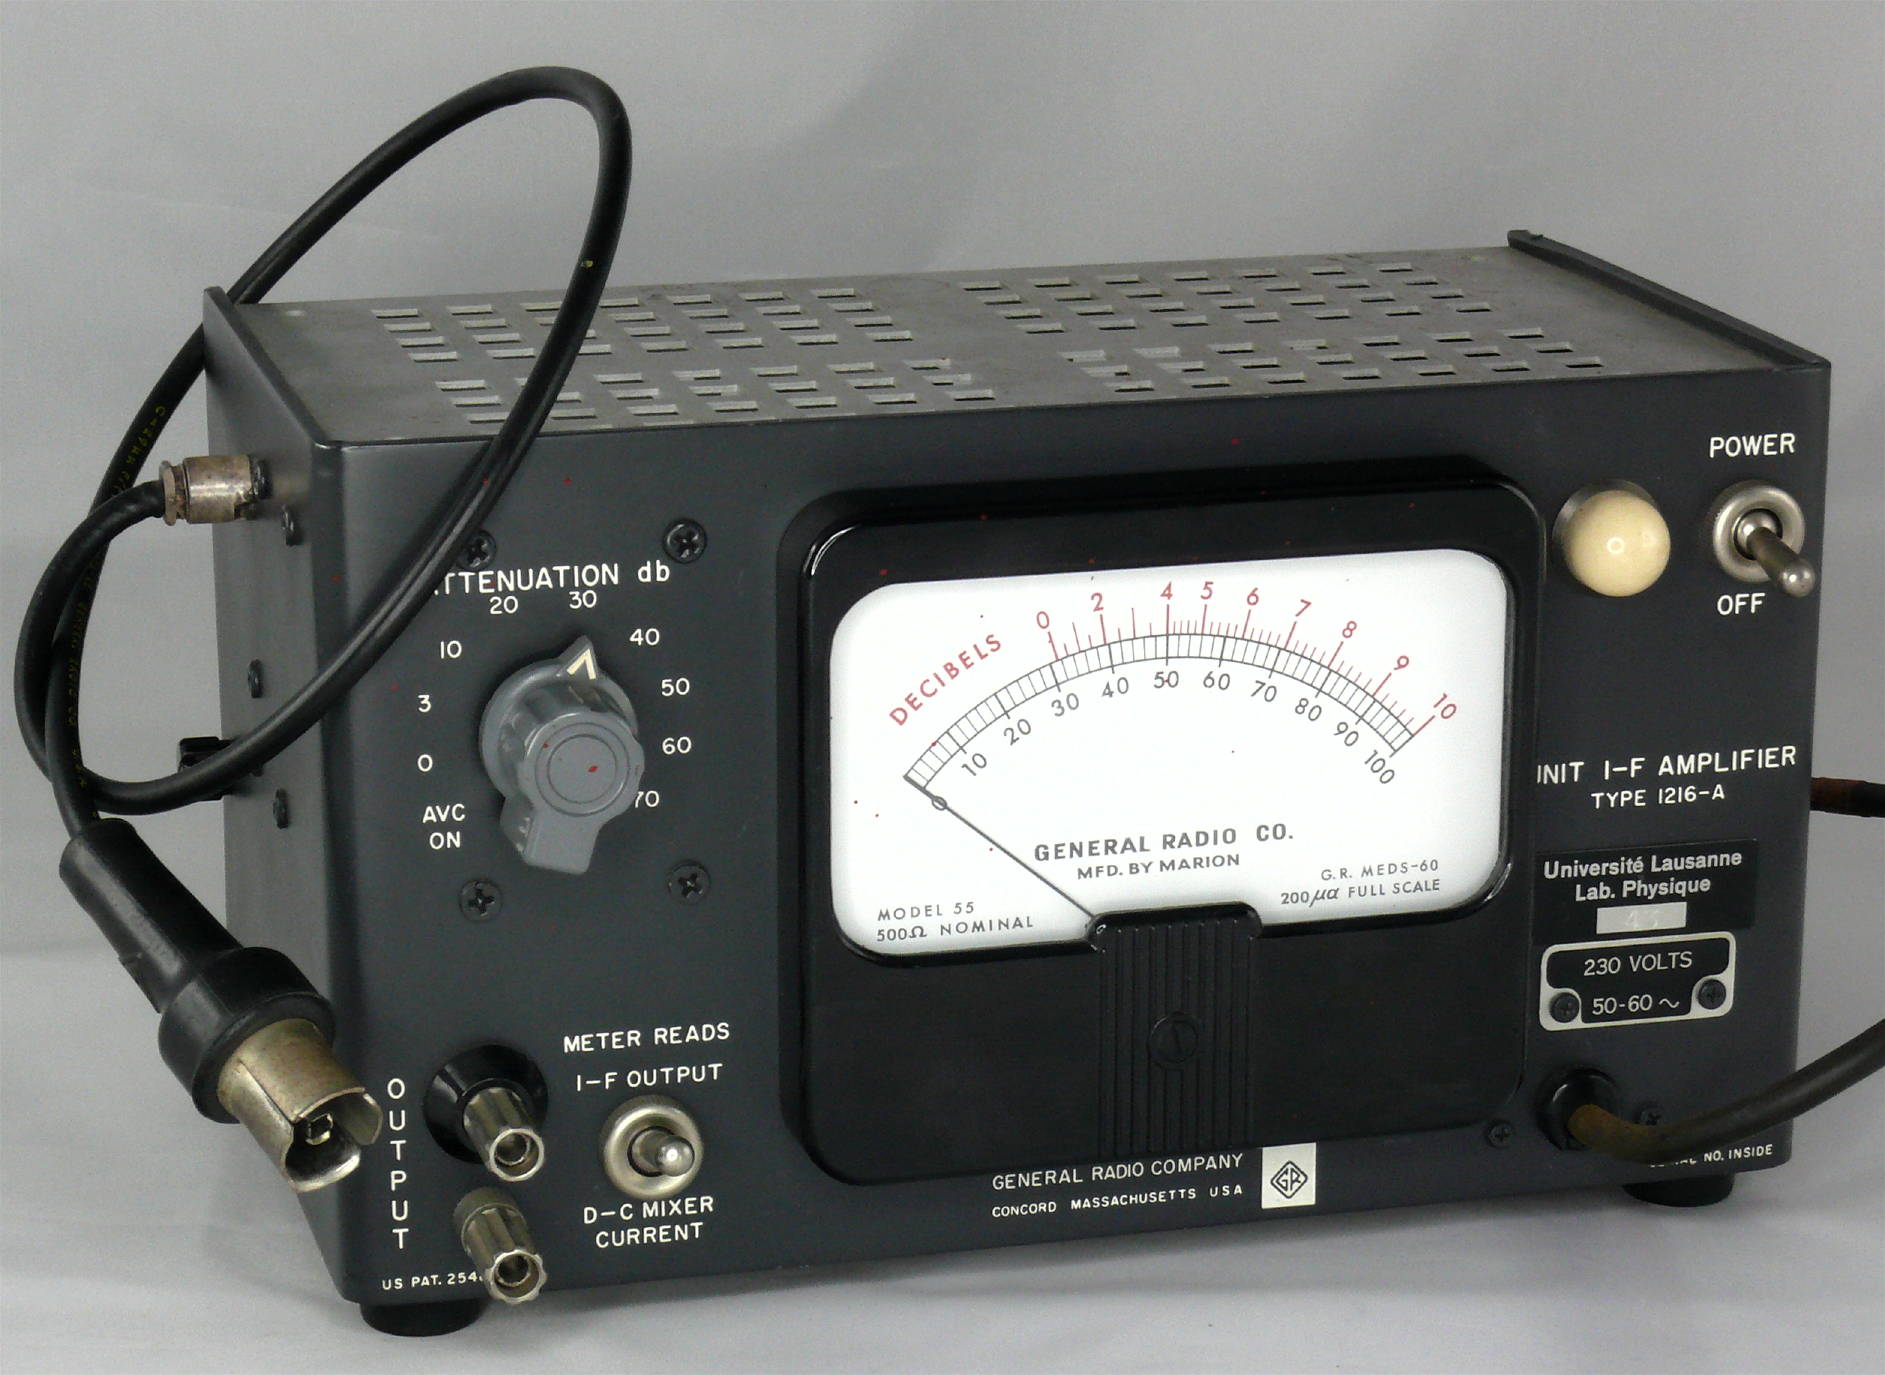 Amplificateur accordé sur 30 MHz avec indicateur de niveau
(GR Type 1216-A)